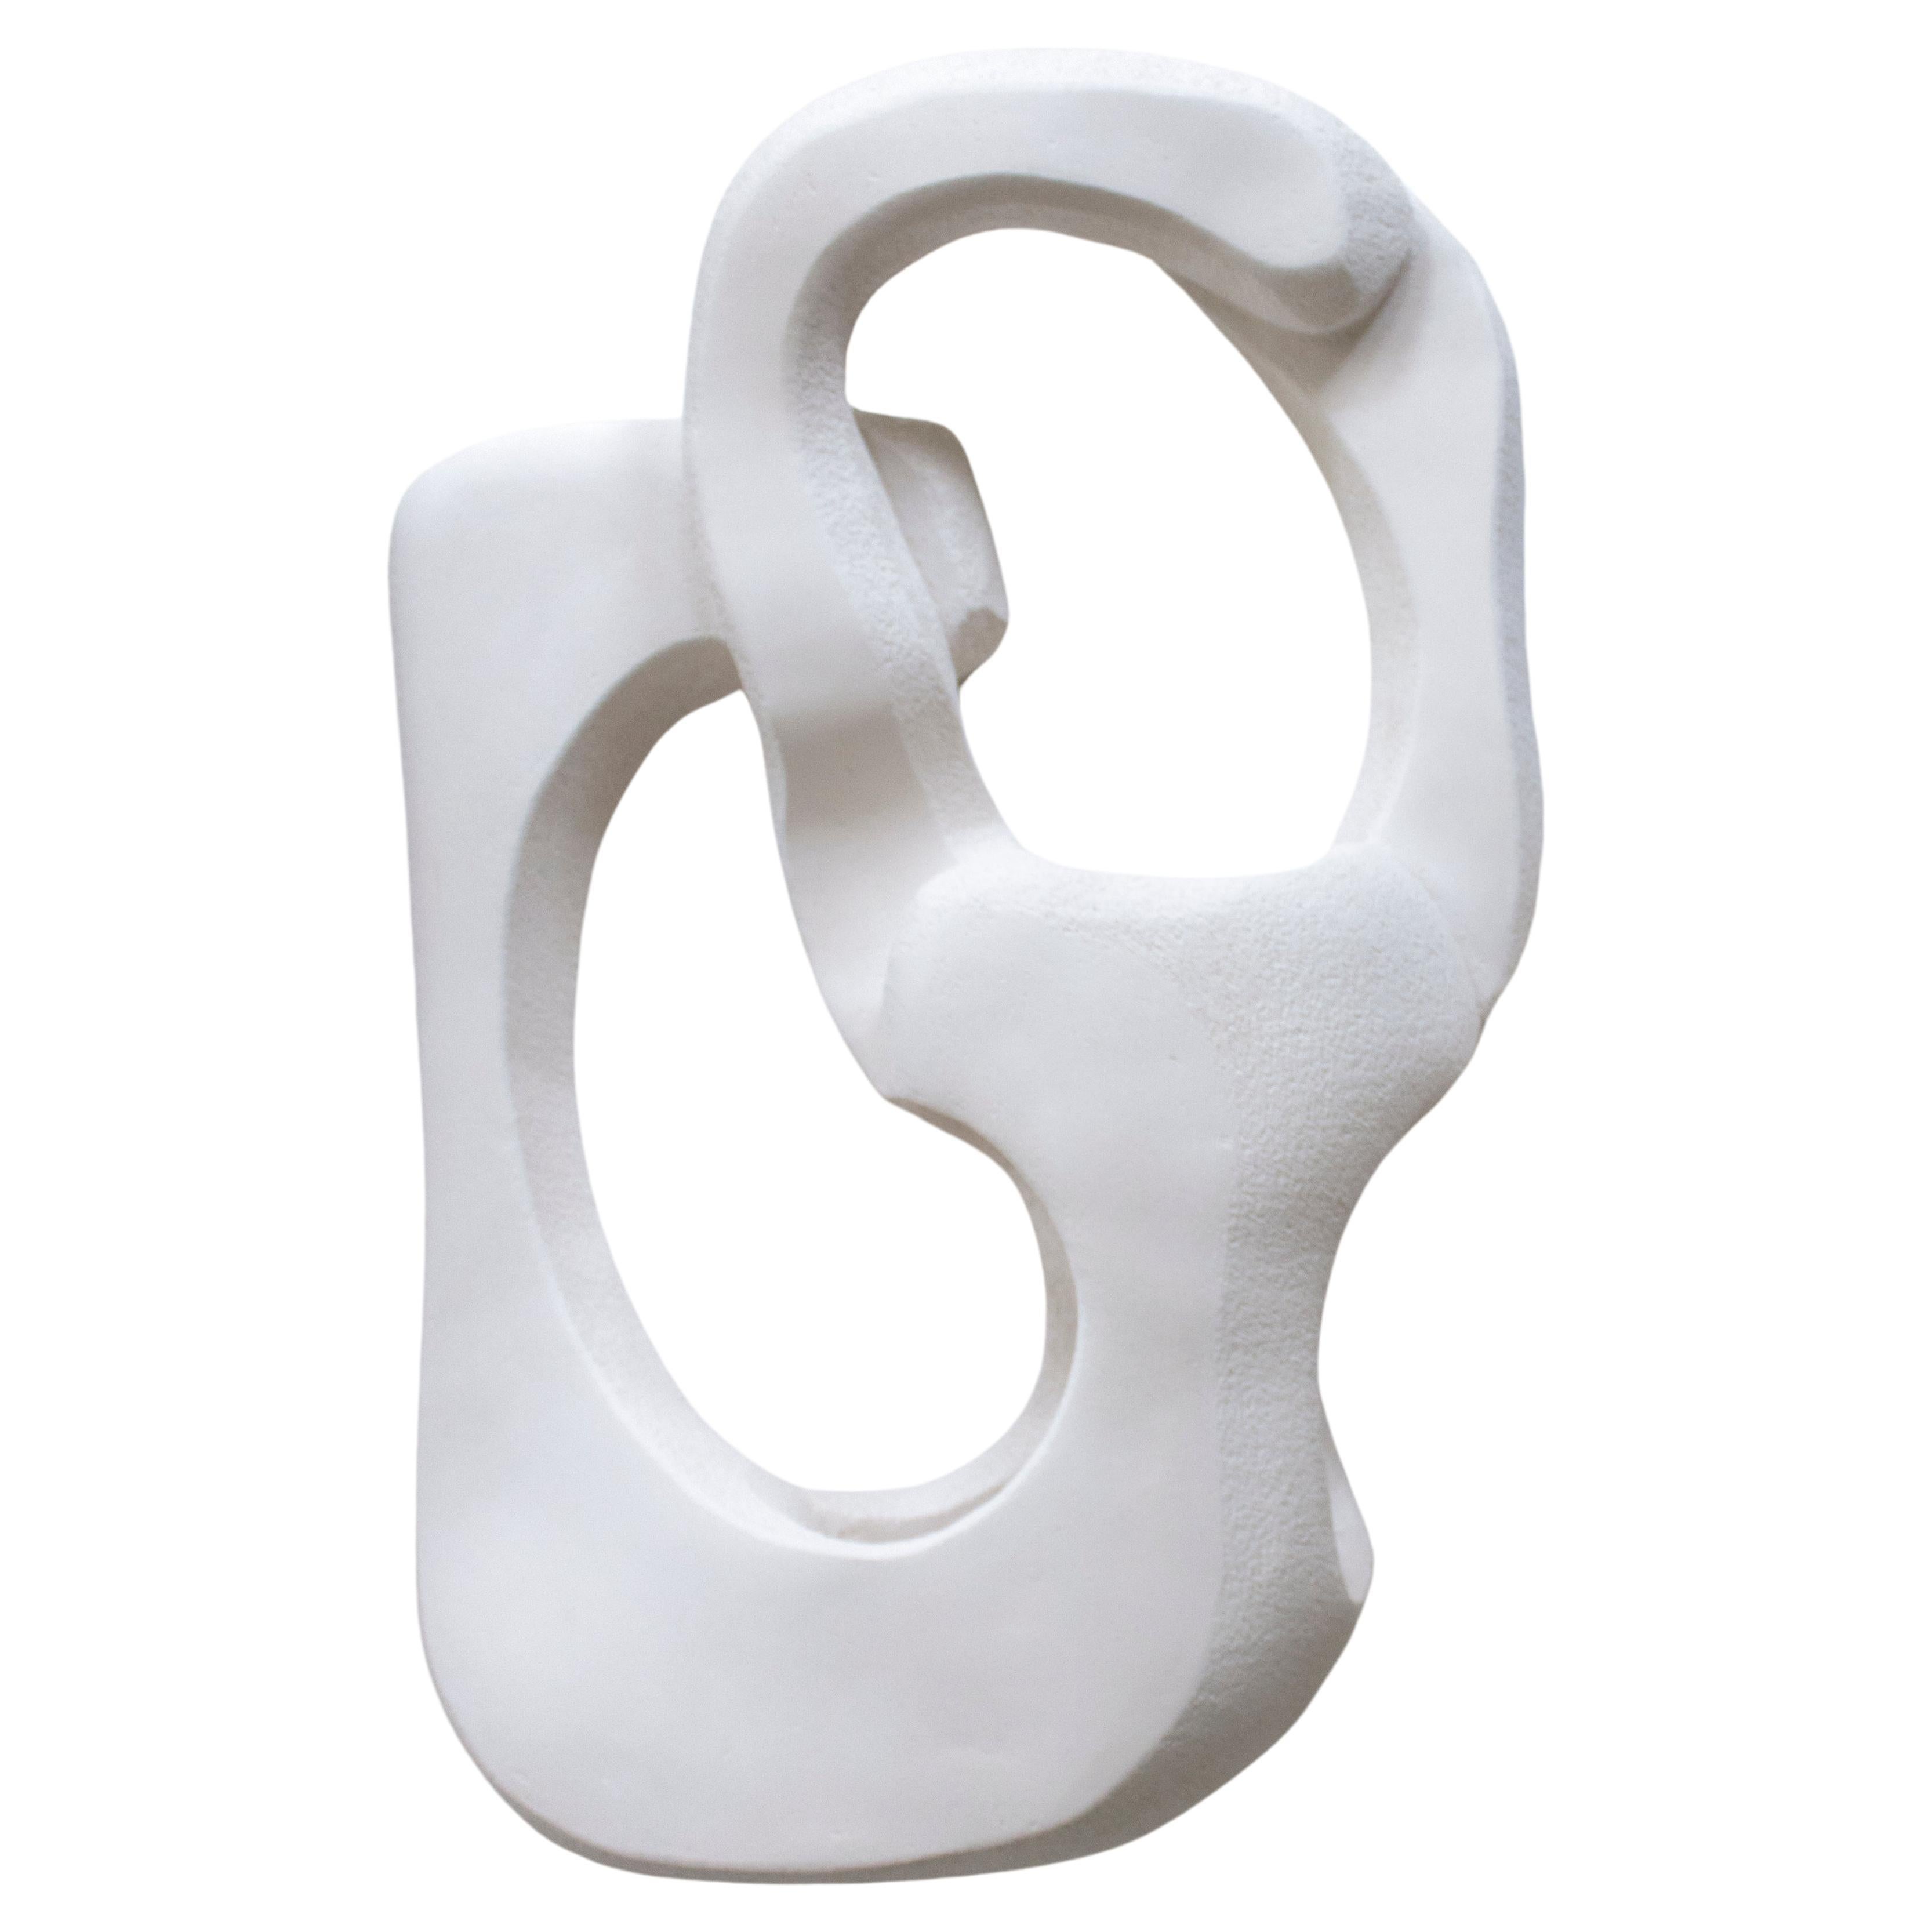 White Contemporary Ceramic Wall Sconce Handmade Sculptural Light "Form no_004" 